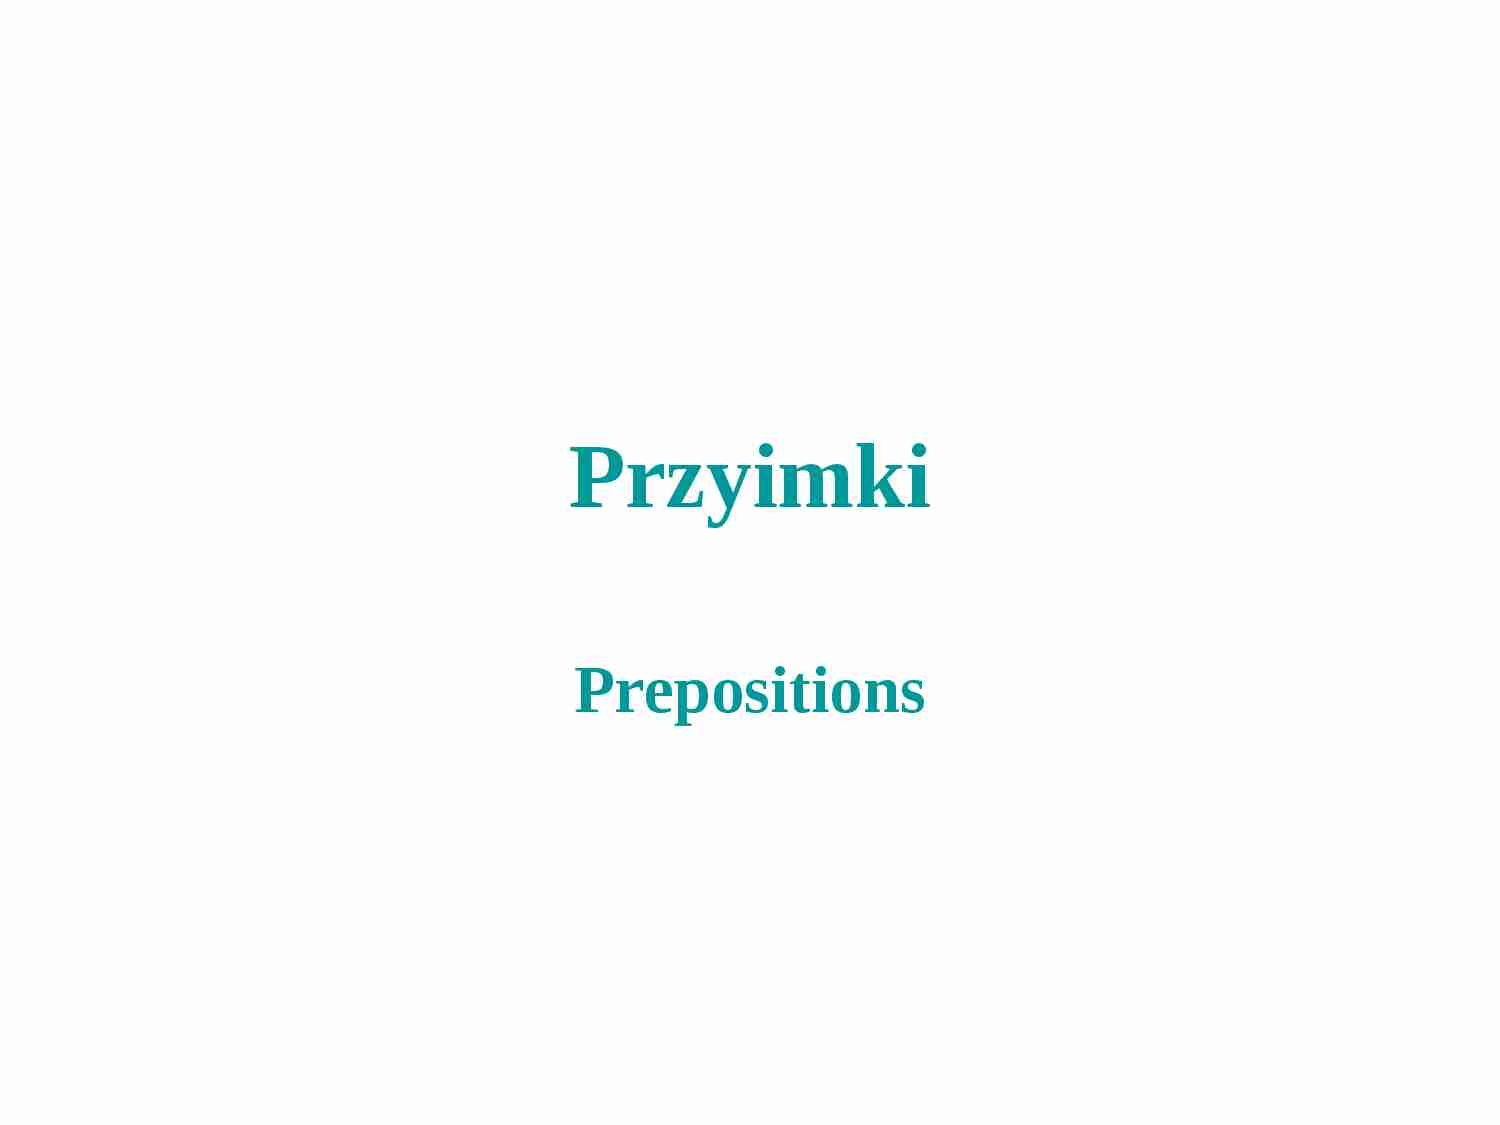 Przyimki - prepositions - strona 1